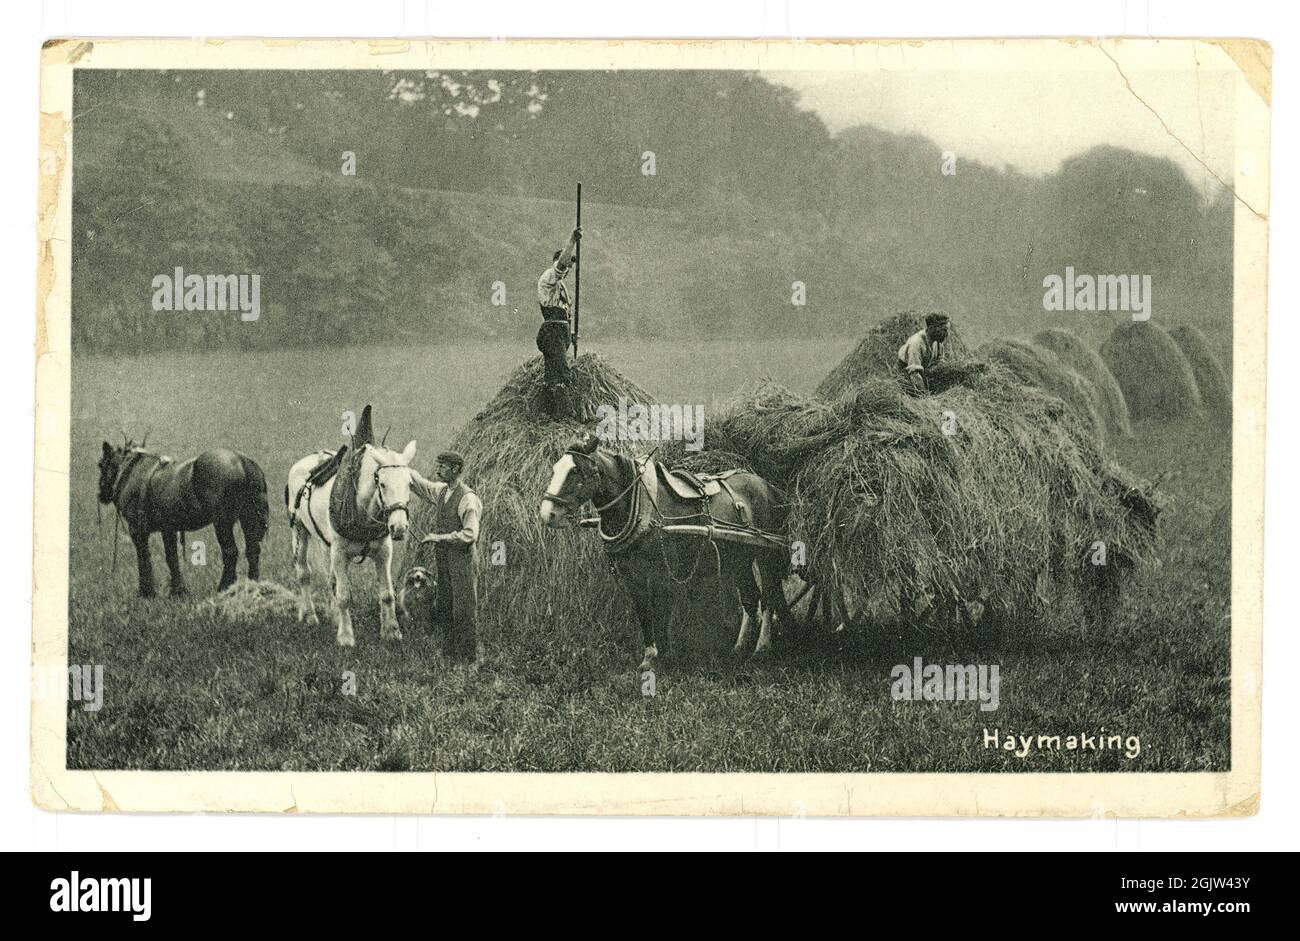 Originale fascino pittoresco quintness epoca edwardiana, primi del 1900 's saluti cartolina di haymaking- un idillio rurale, pubblicato dal villaggio di Kilham, East Riding of Yorkshire, Regno Unito datato maggio 1907 Foto Stock